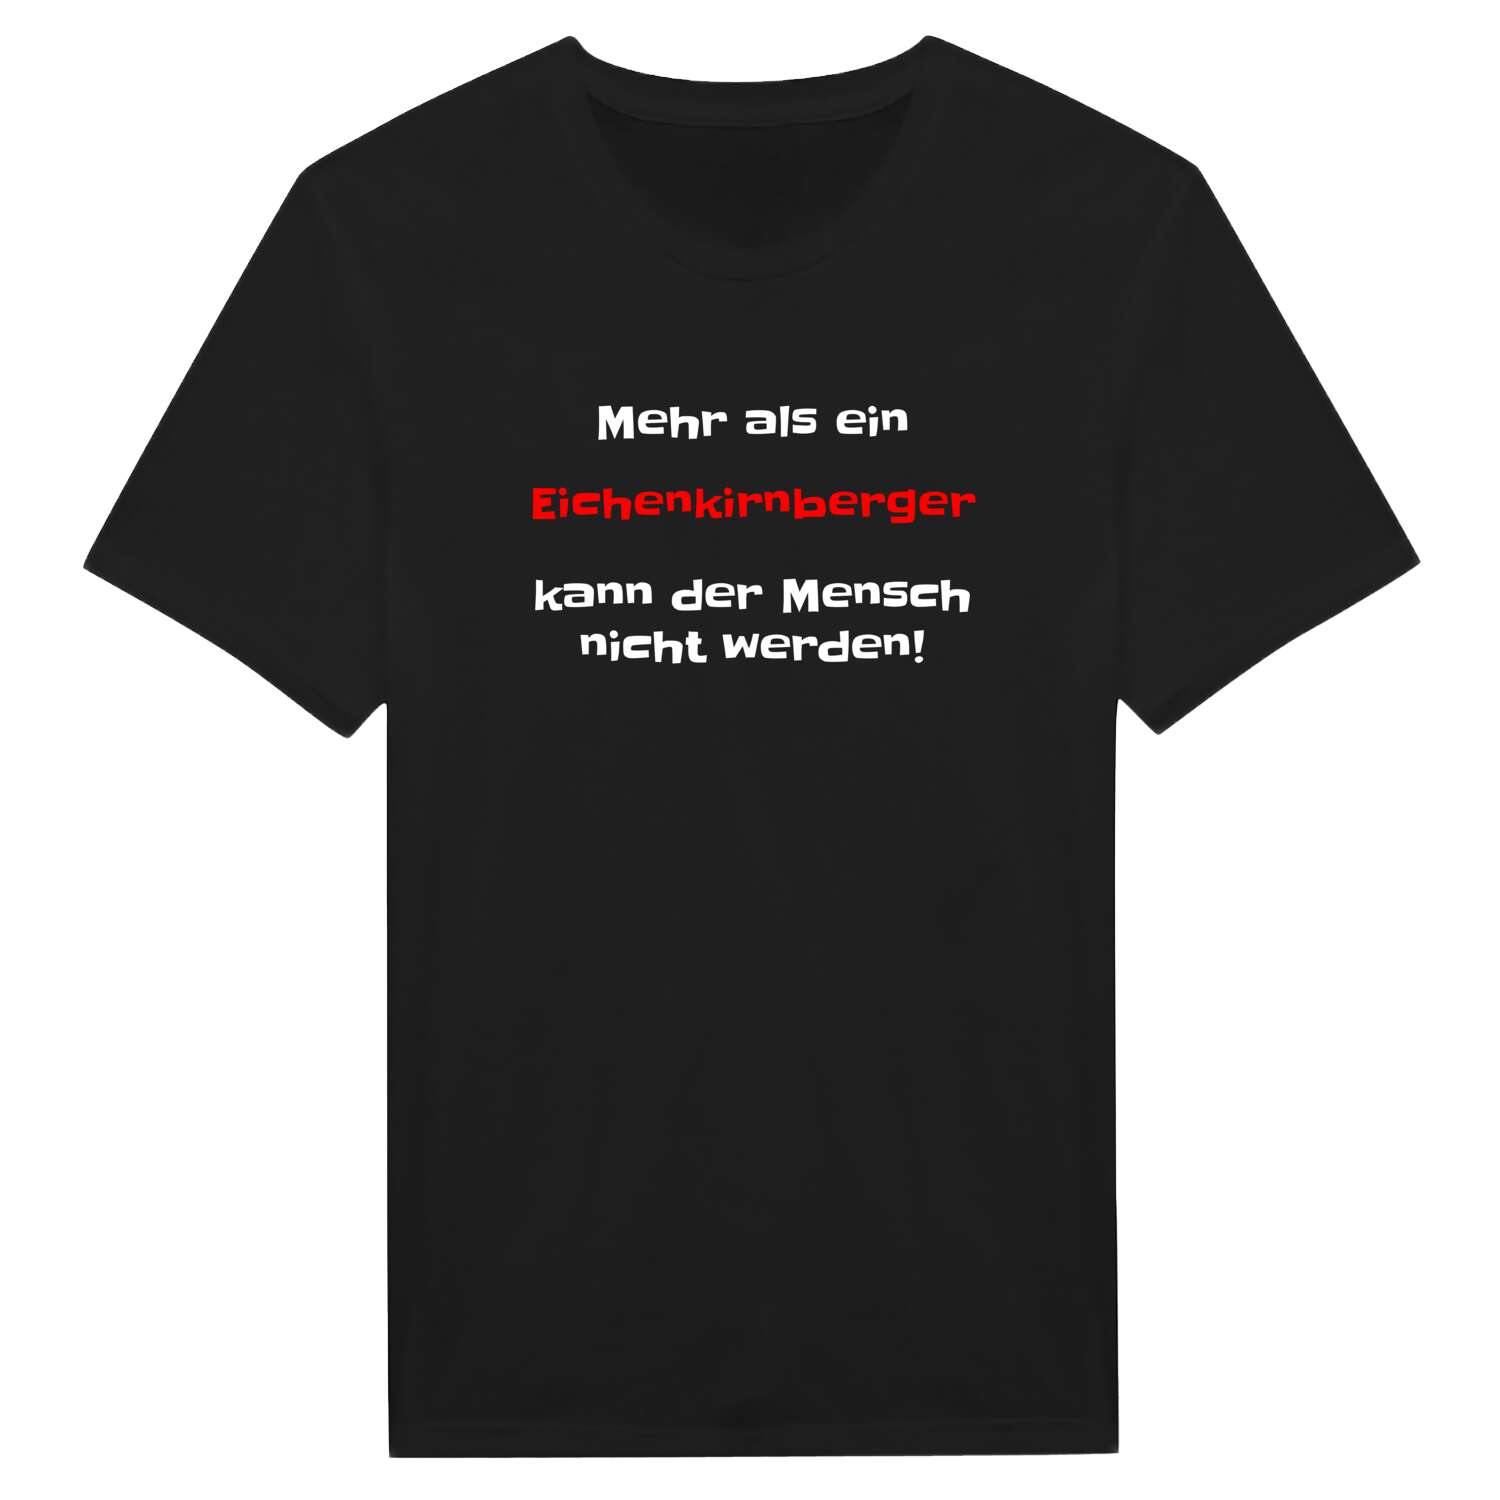 Eichenkirnberg T-Shirt »Mehr als ein«